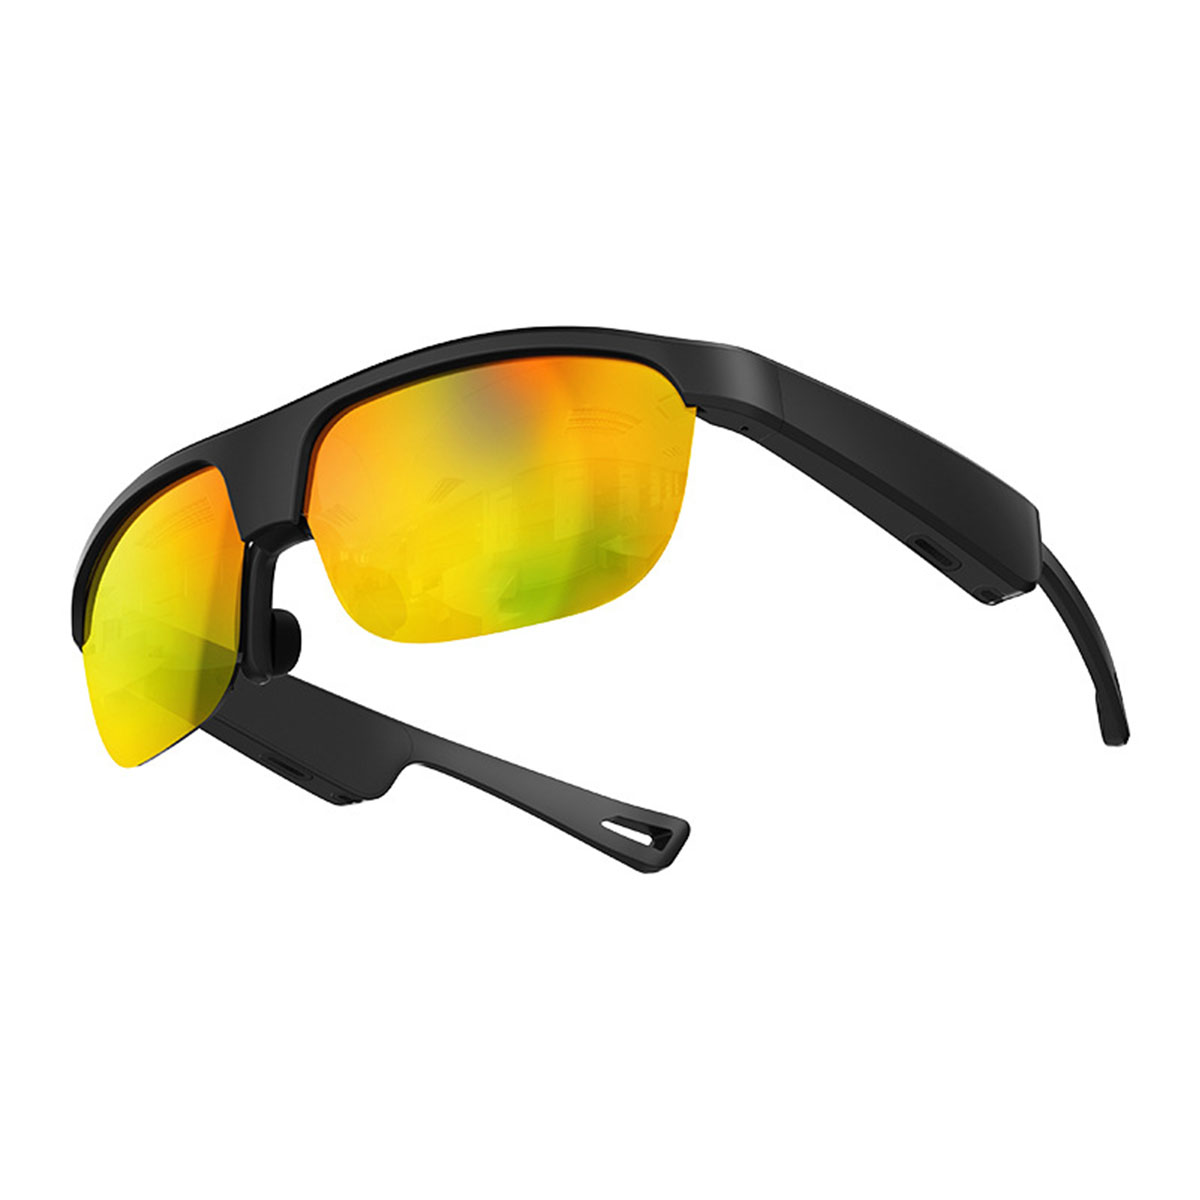 Sunglasses Outdoor Bluetooth Brille Orange Bluetooth Smart Navigation, Musik, Open-ear Freisprechen, BRIGHTAKE -